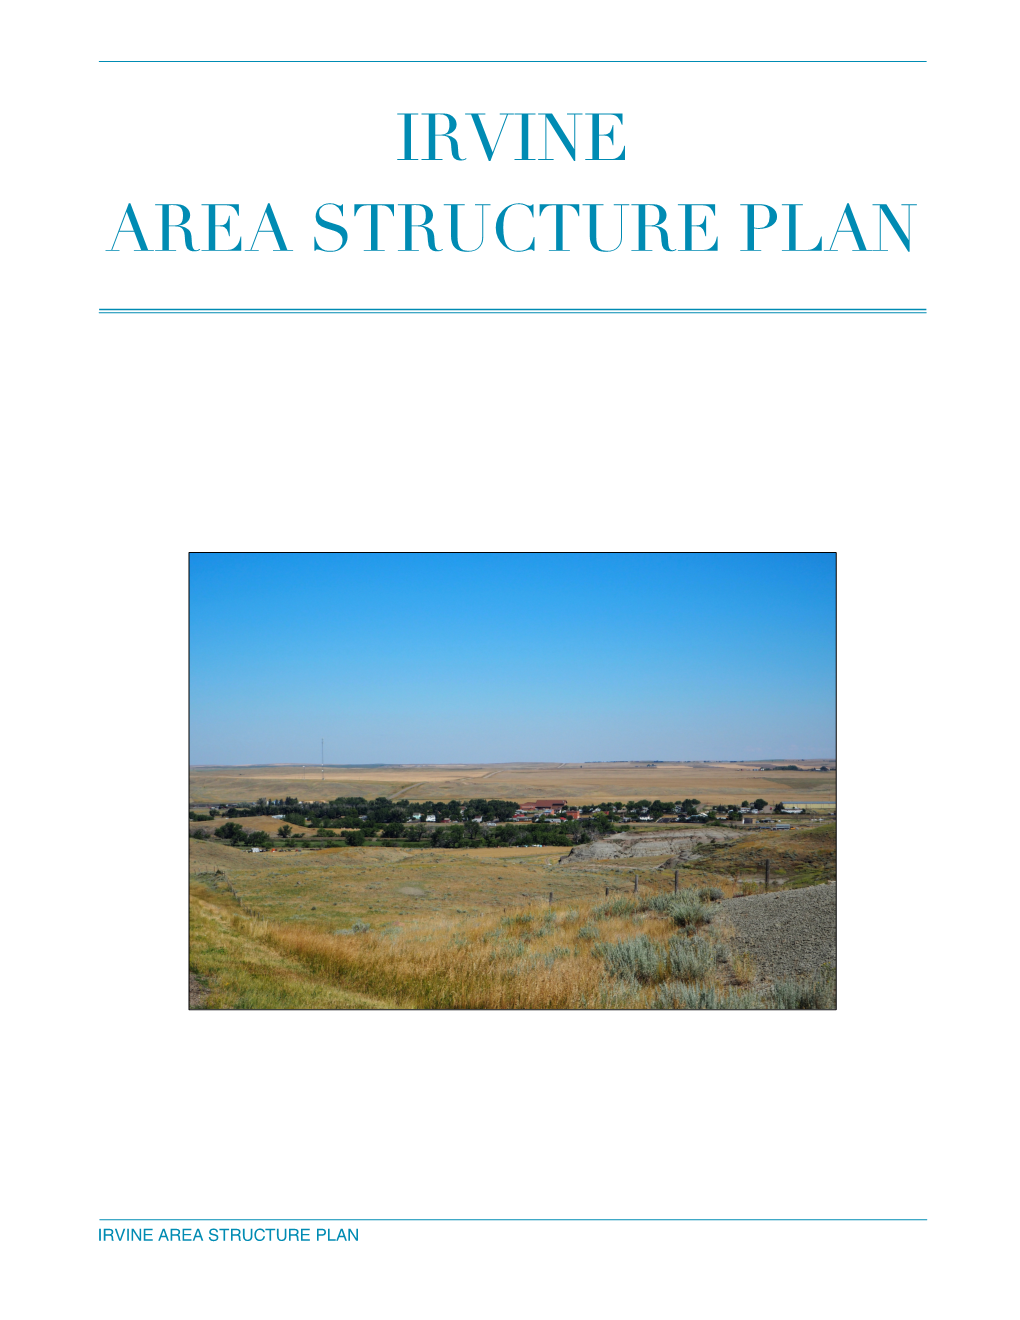 Irvine Area Structure Plan